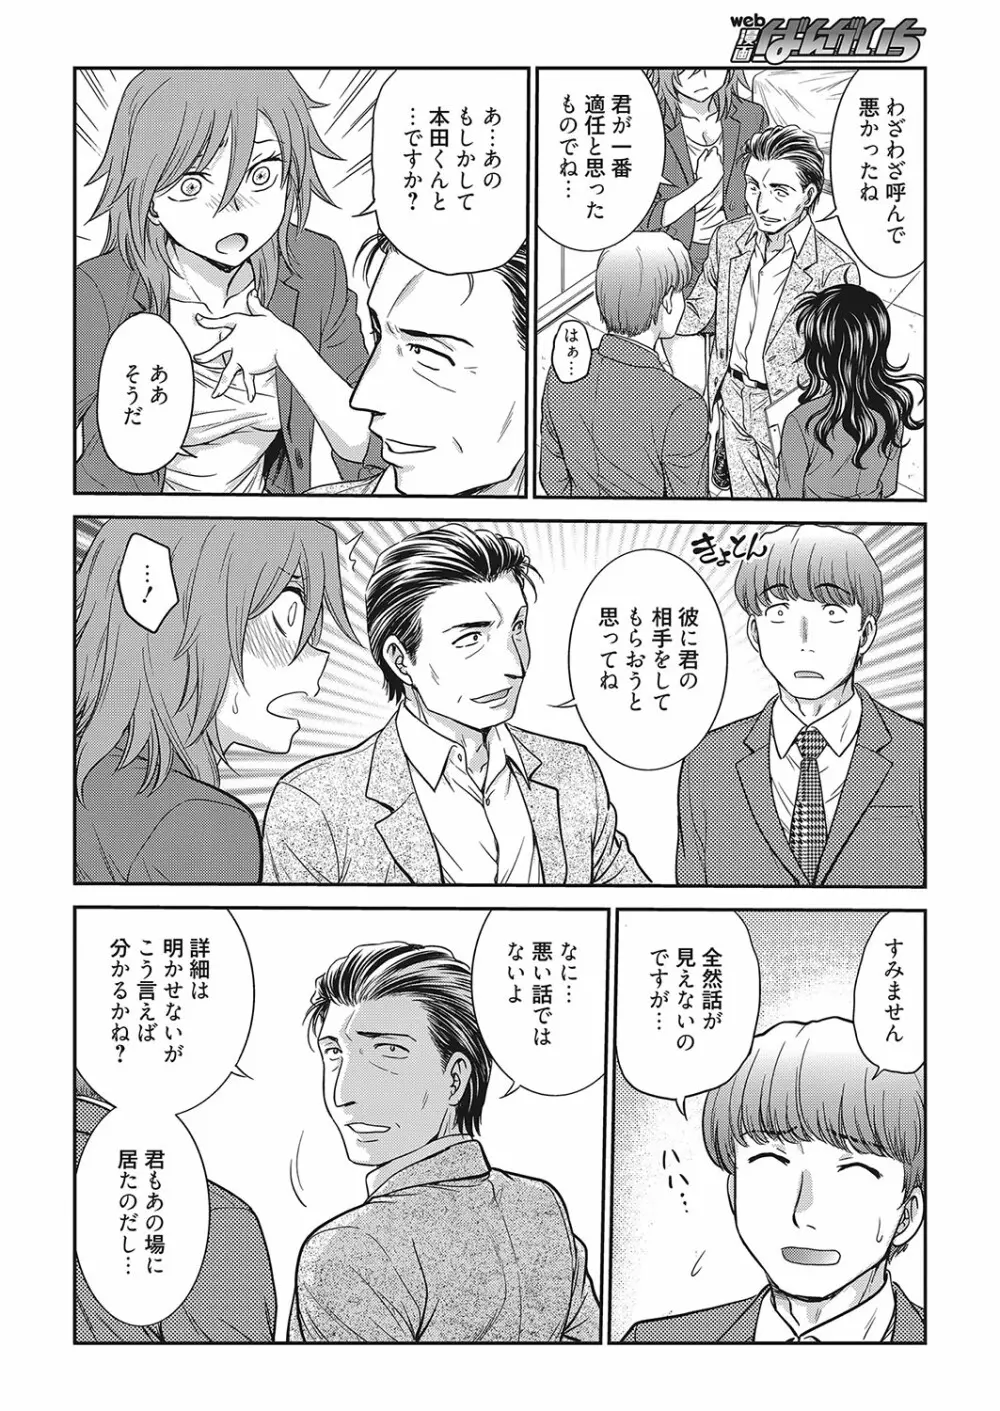 web 漫画ばんがいち Vol.16 25ページ